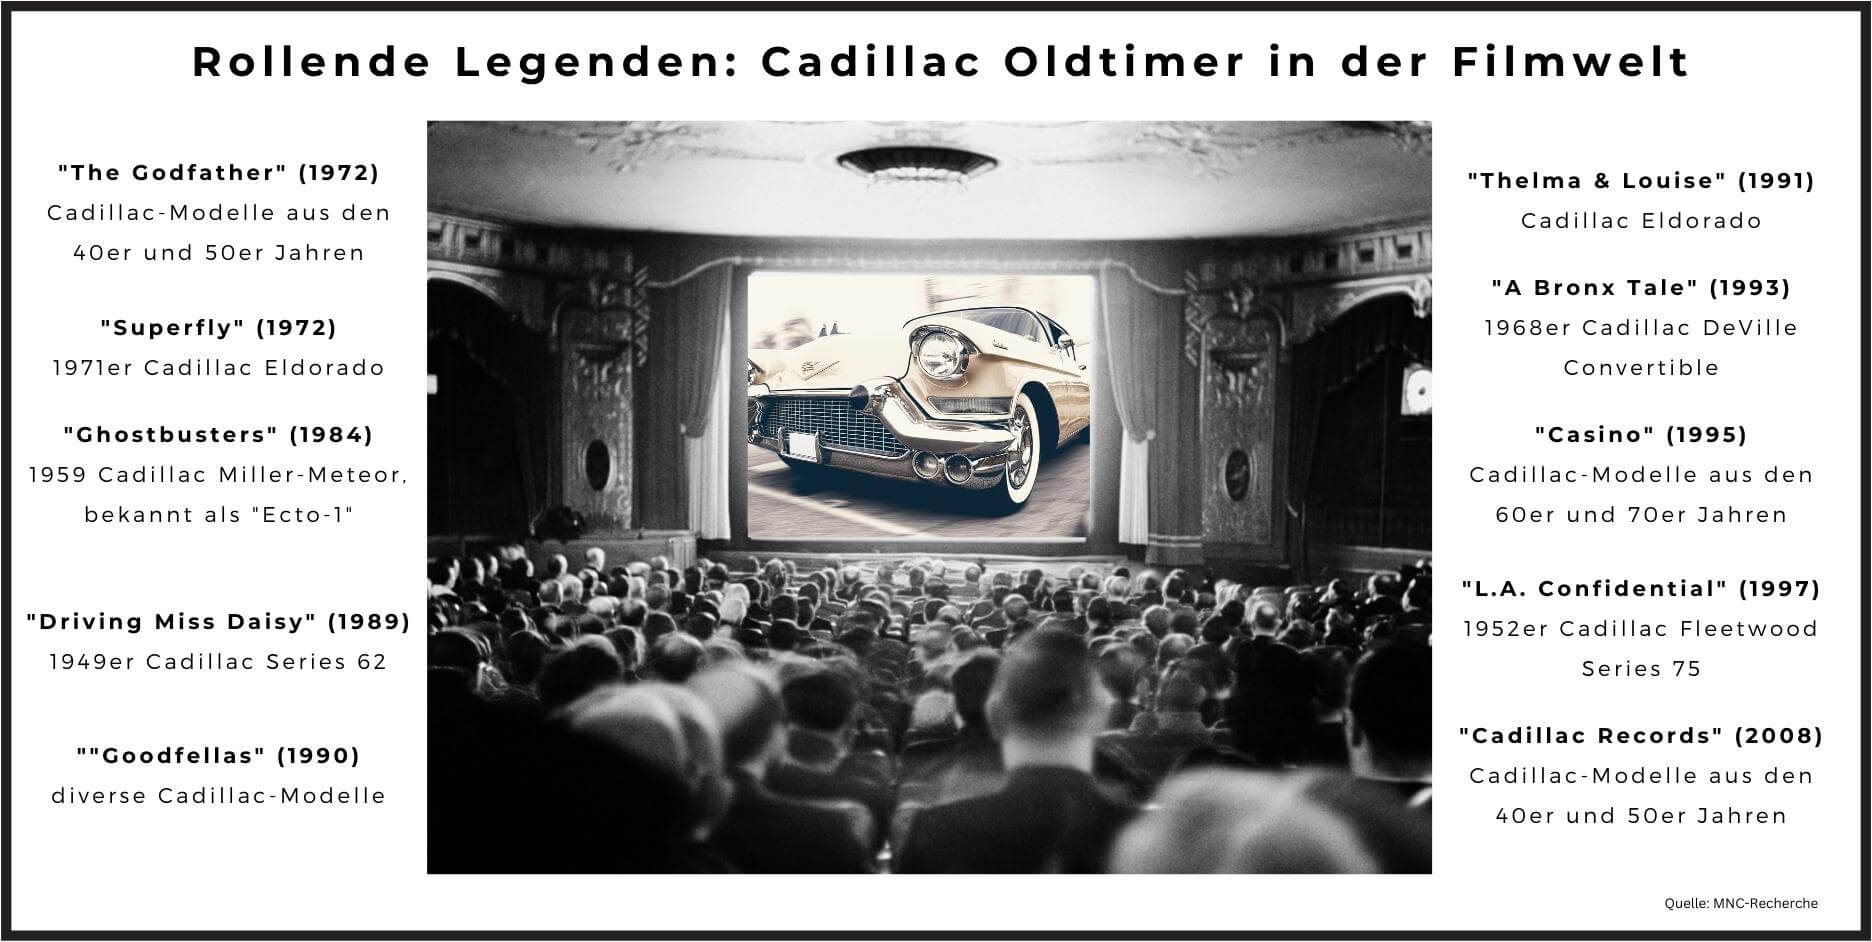 Cadillac Oldtimer: Cadillacs in der Filmwelt